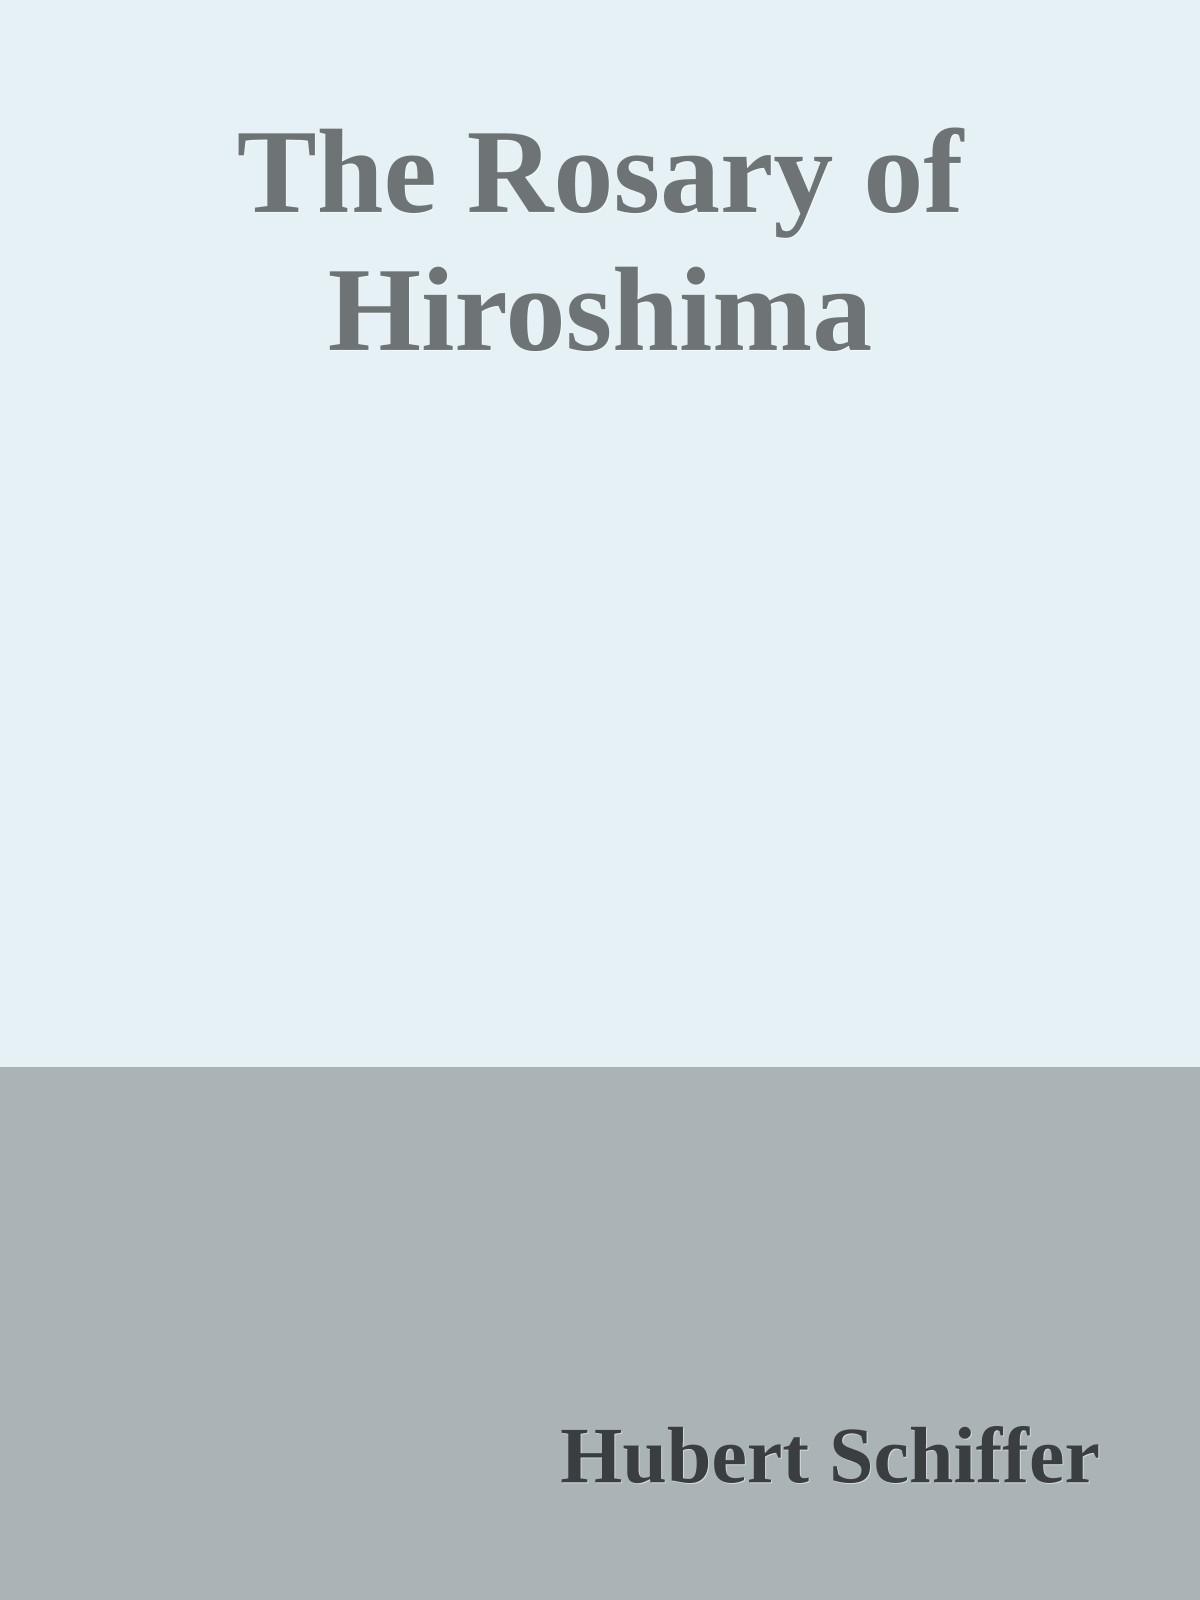 The Rosary of Hiroshima (1953) by Hubert Schiffer